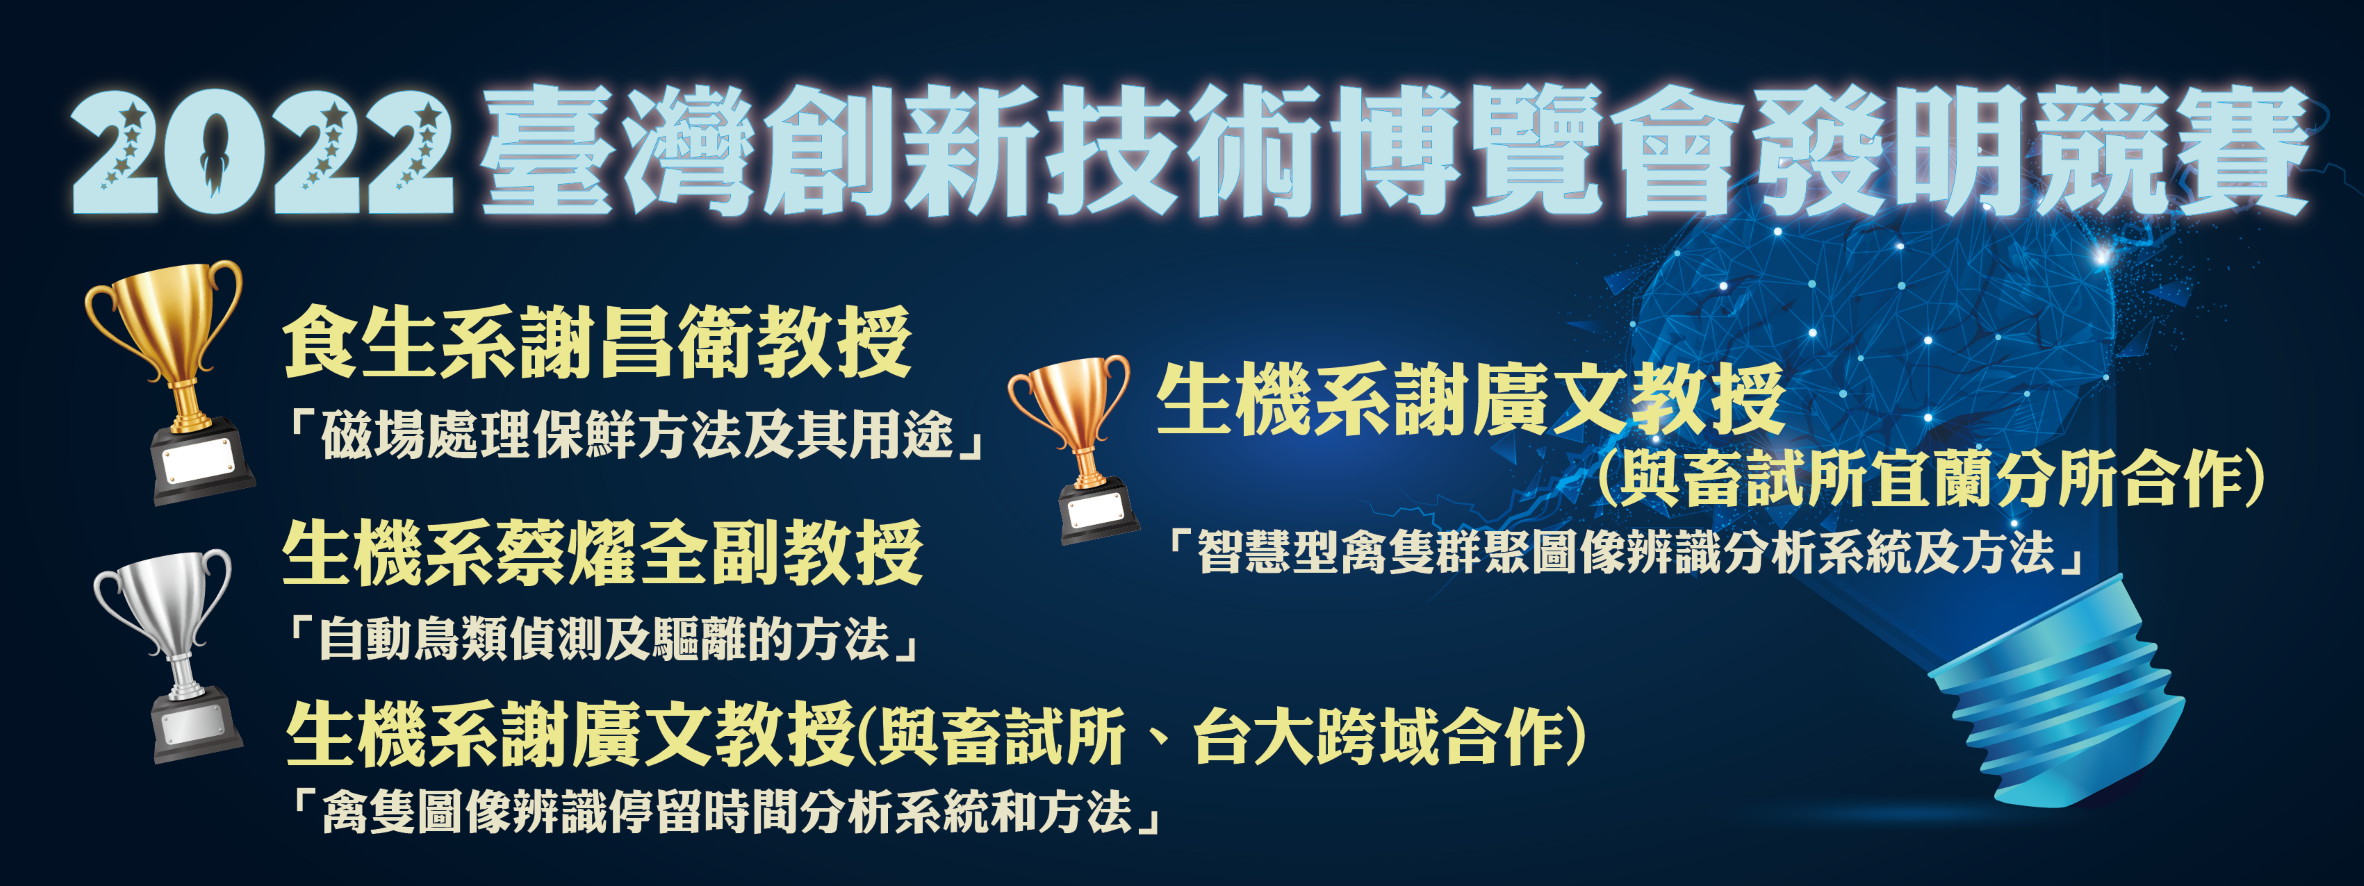 2022臺灣創新技術博覽會發明競賽